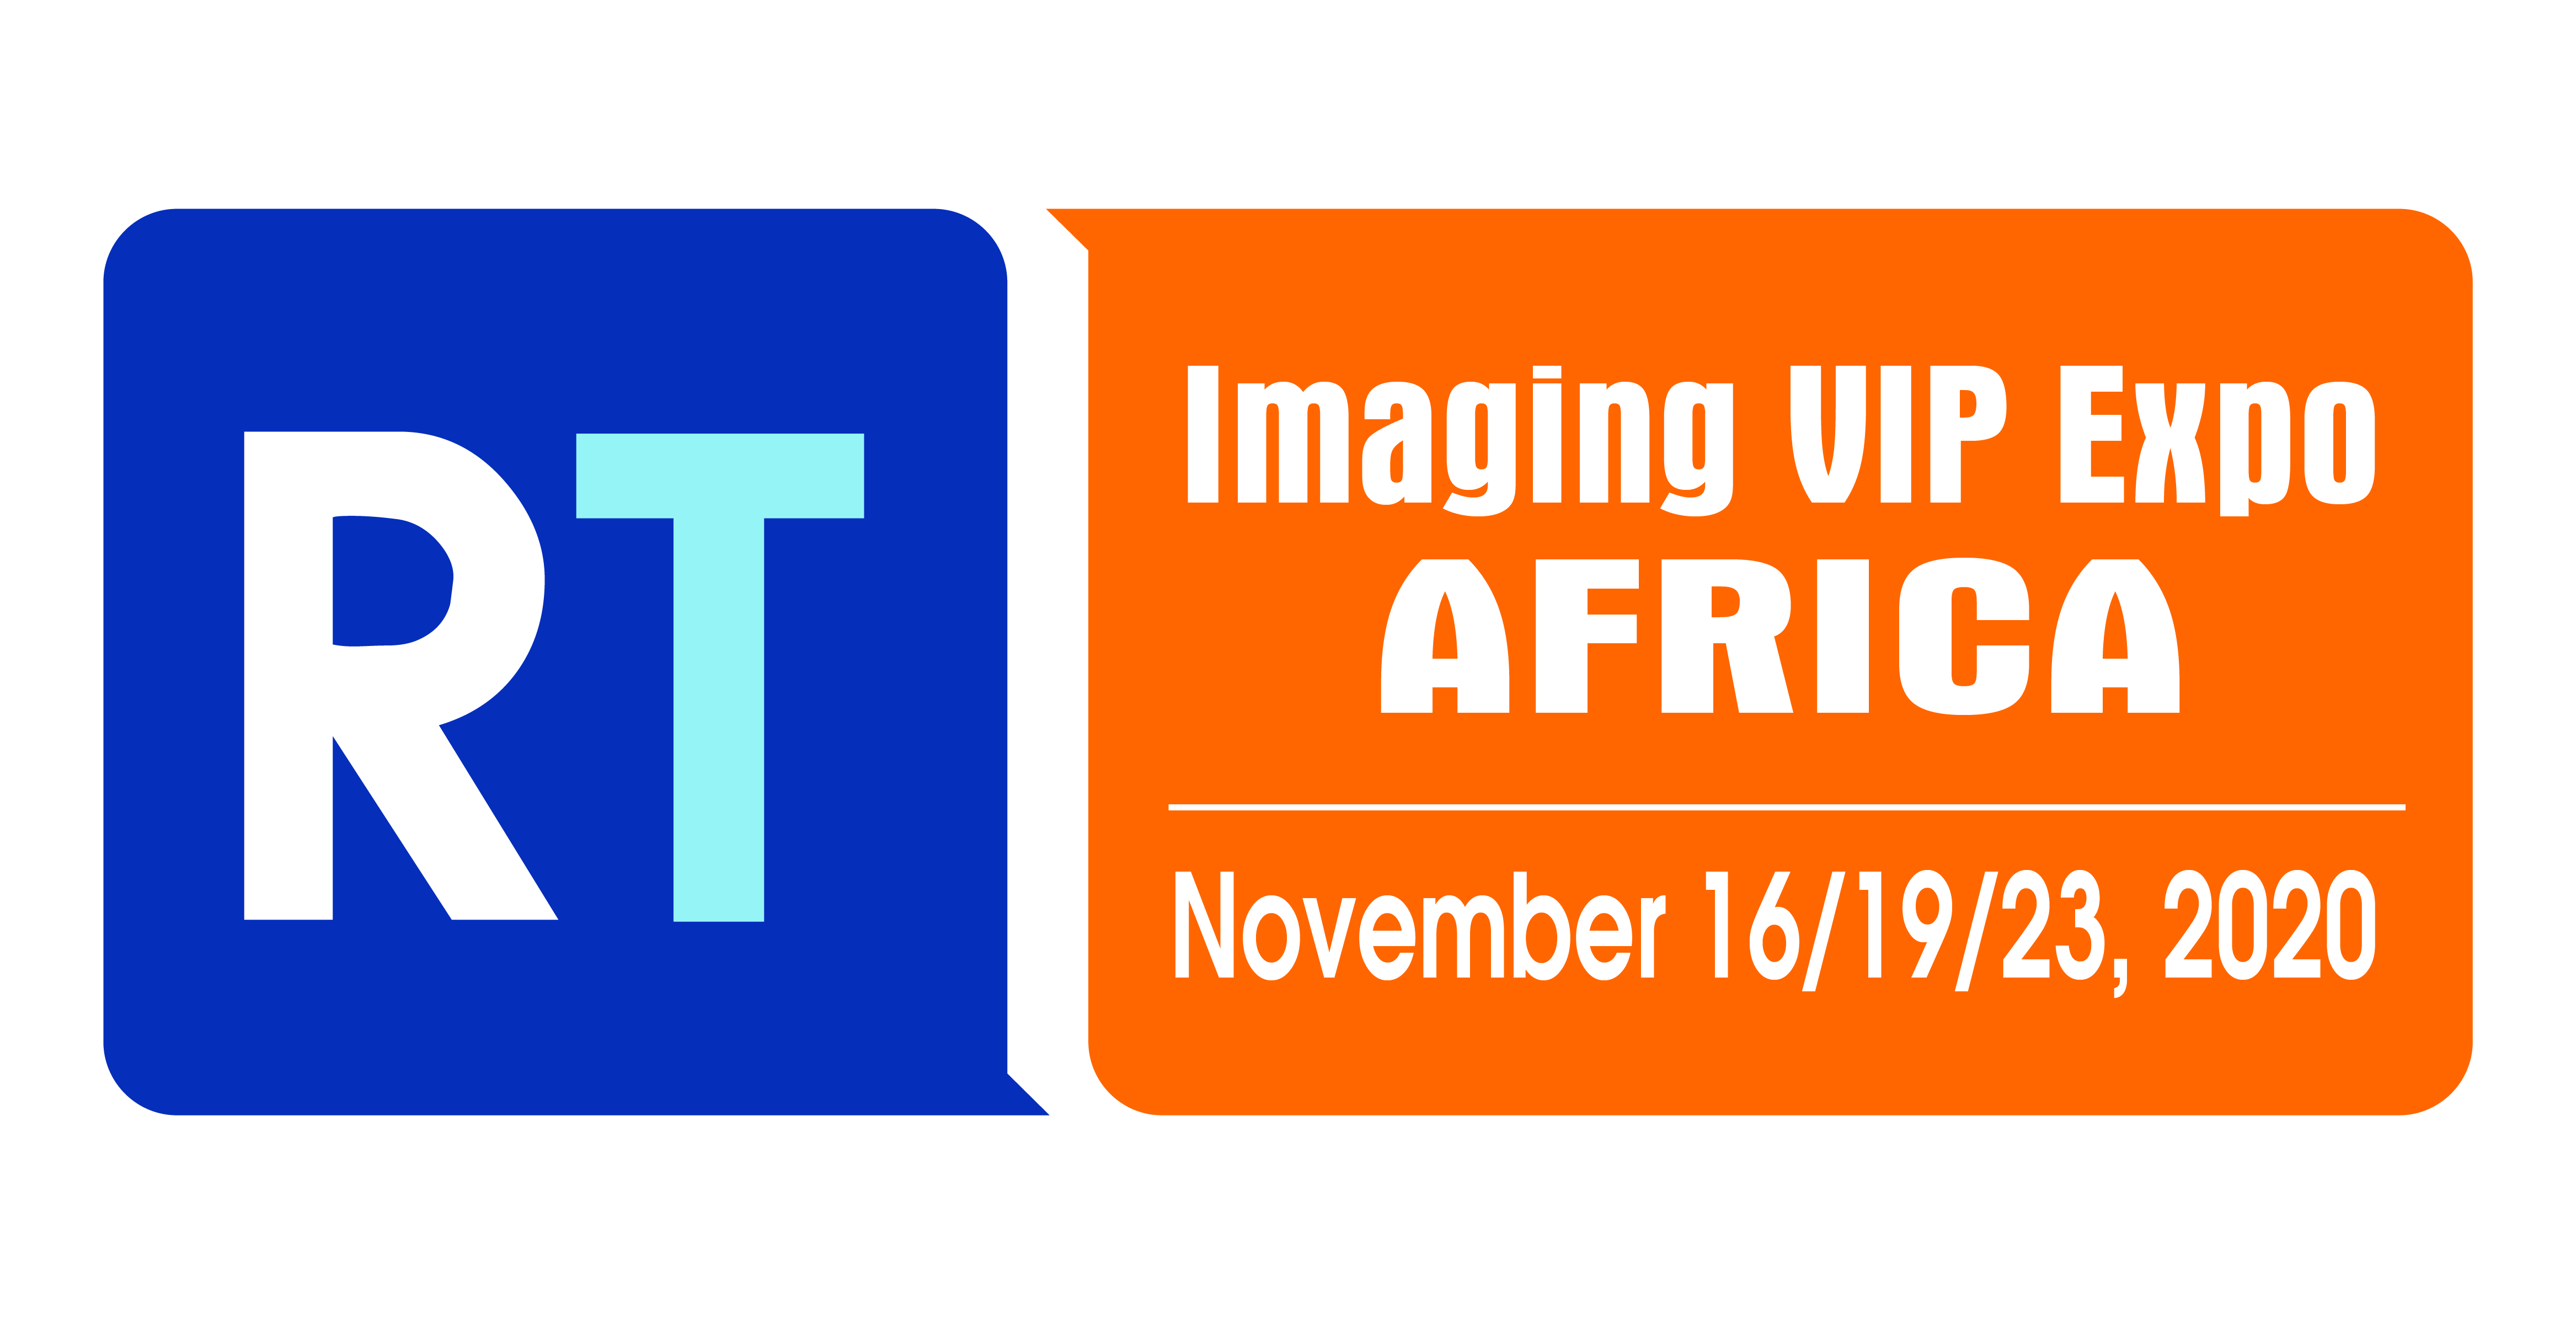 rt,imaging,vip,expo,africa,2020,rtmworld